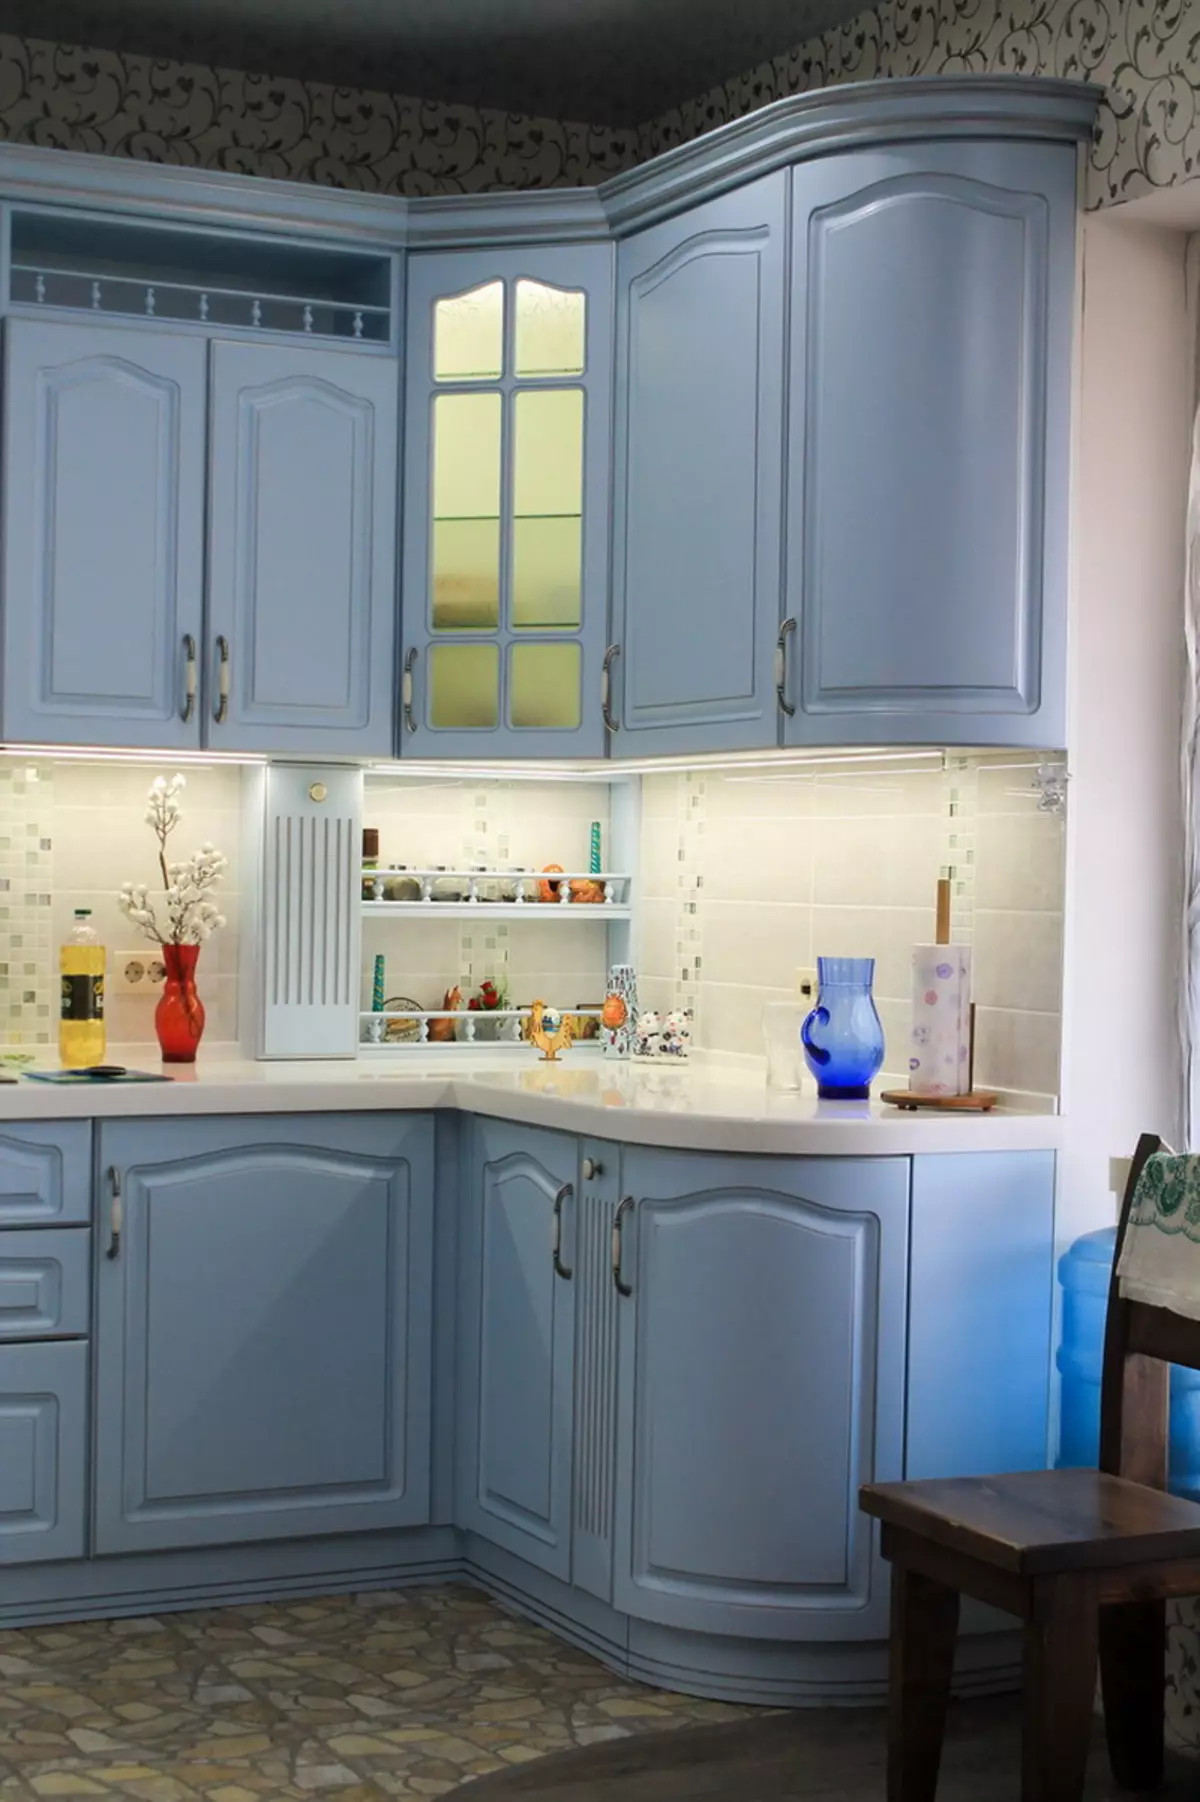 藍廚房（82張照片）：在藍色廚房套裝內部合併哪種顏色？淺藍色和深藍色色調的廚房設計 9555_4